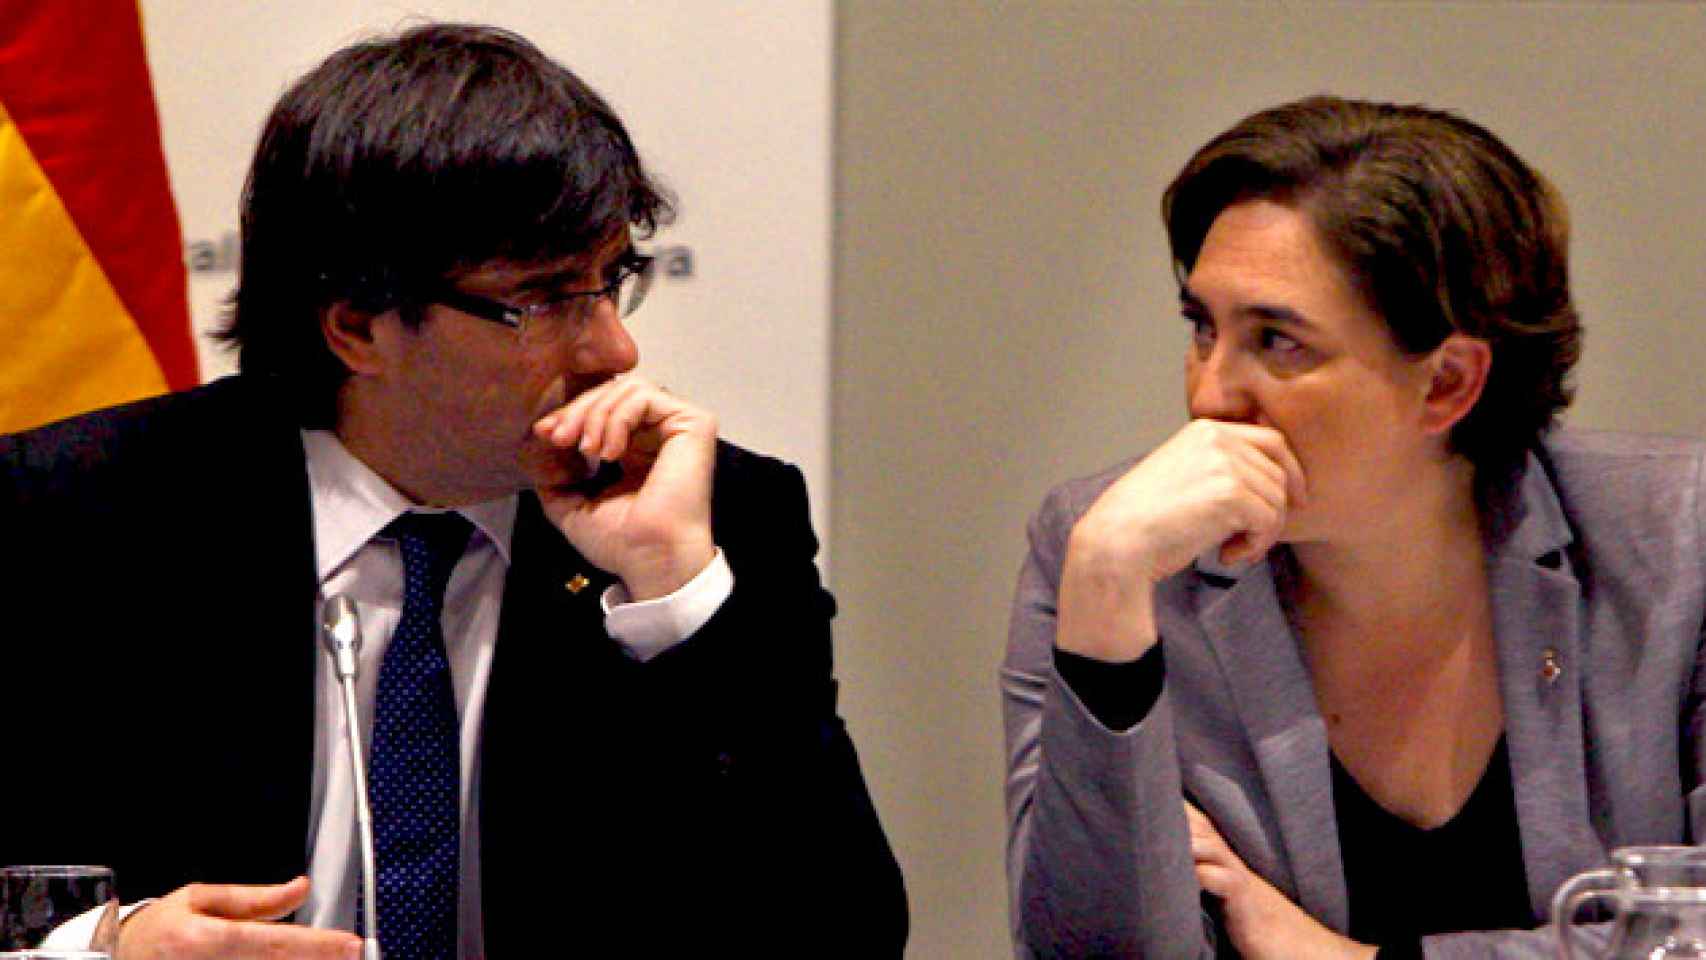 La alcaldesa de Barcelona, Ada Colau, y el presidente de la Generalitat, Carles Puigdemont, en una imagen de archivo / CG